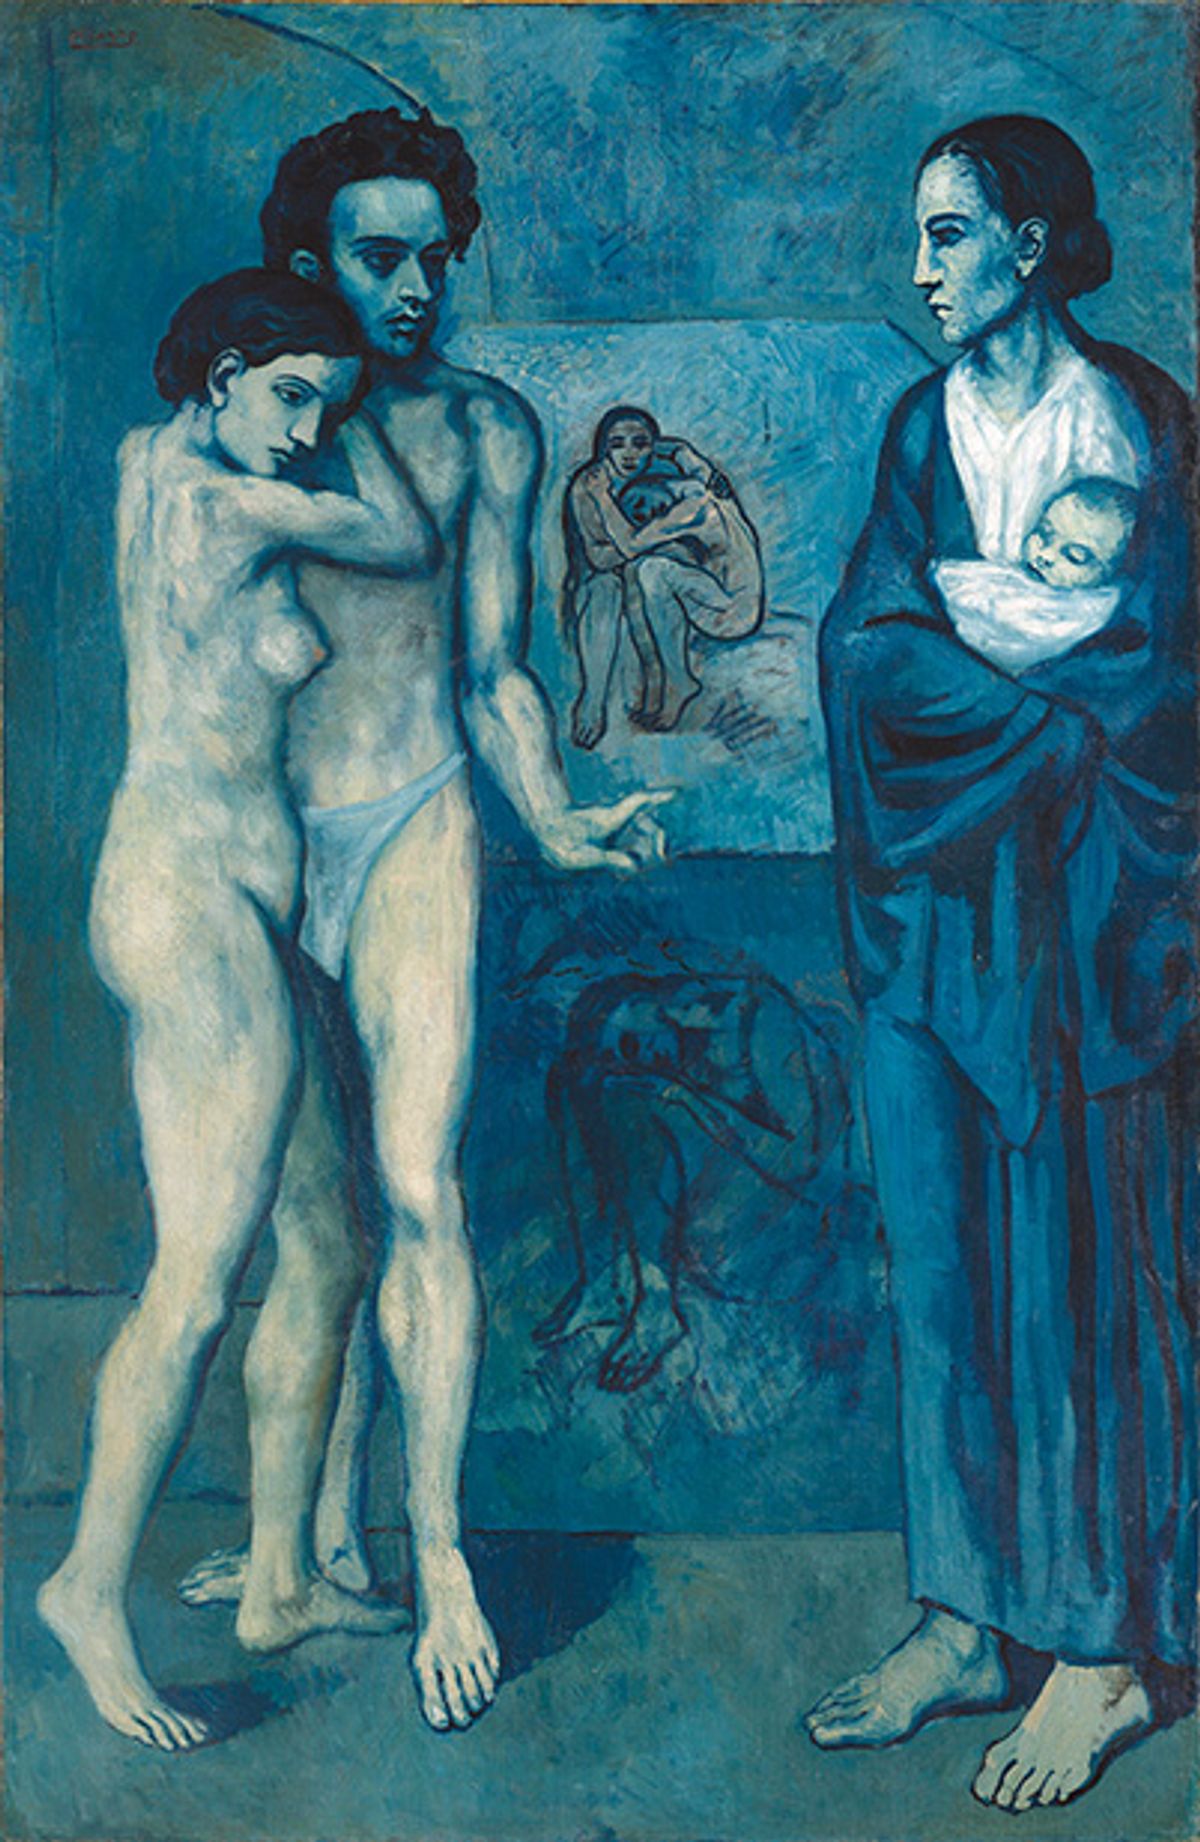 Pablo Picasss's La Vie (1903) © Succession Picasso / ProLitteris, Zürich 2018; Photo: © The Cleveland Museum of Art